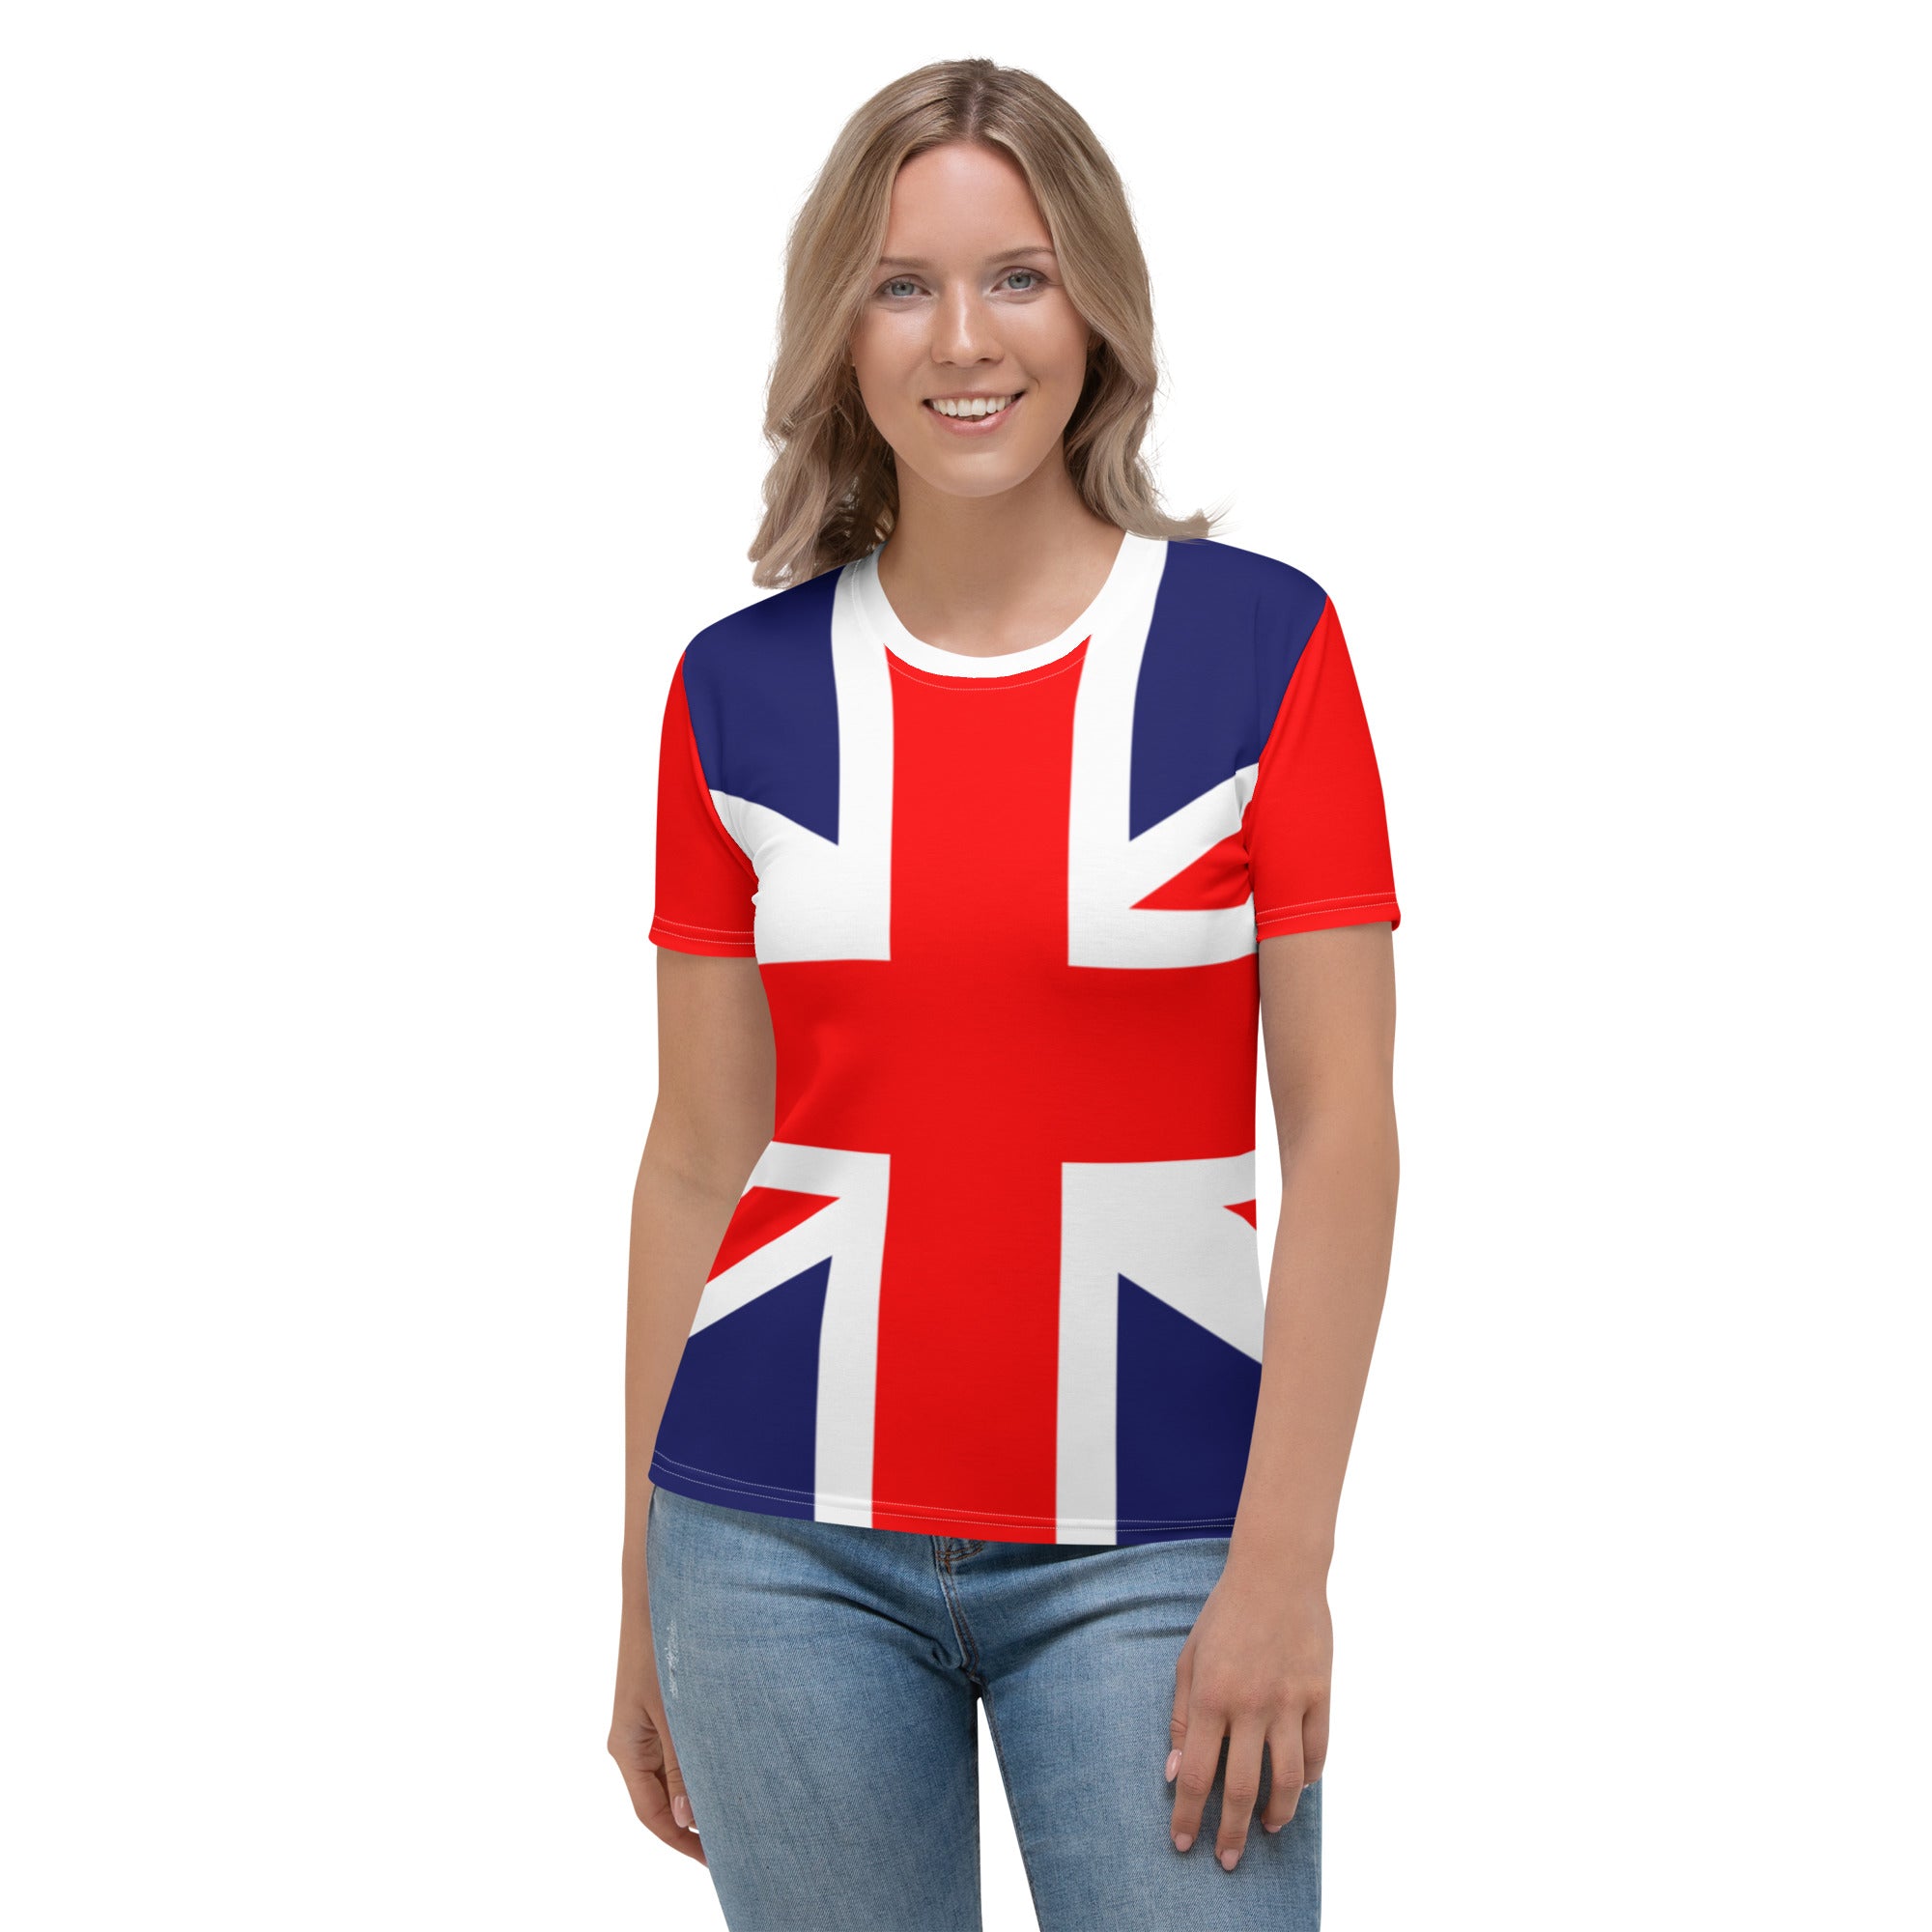 The Union Jack Women's T-shirt Jack Clothing / Union Jack Gift YVDdesign